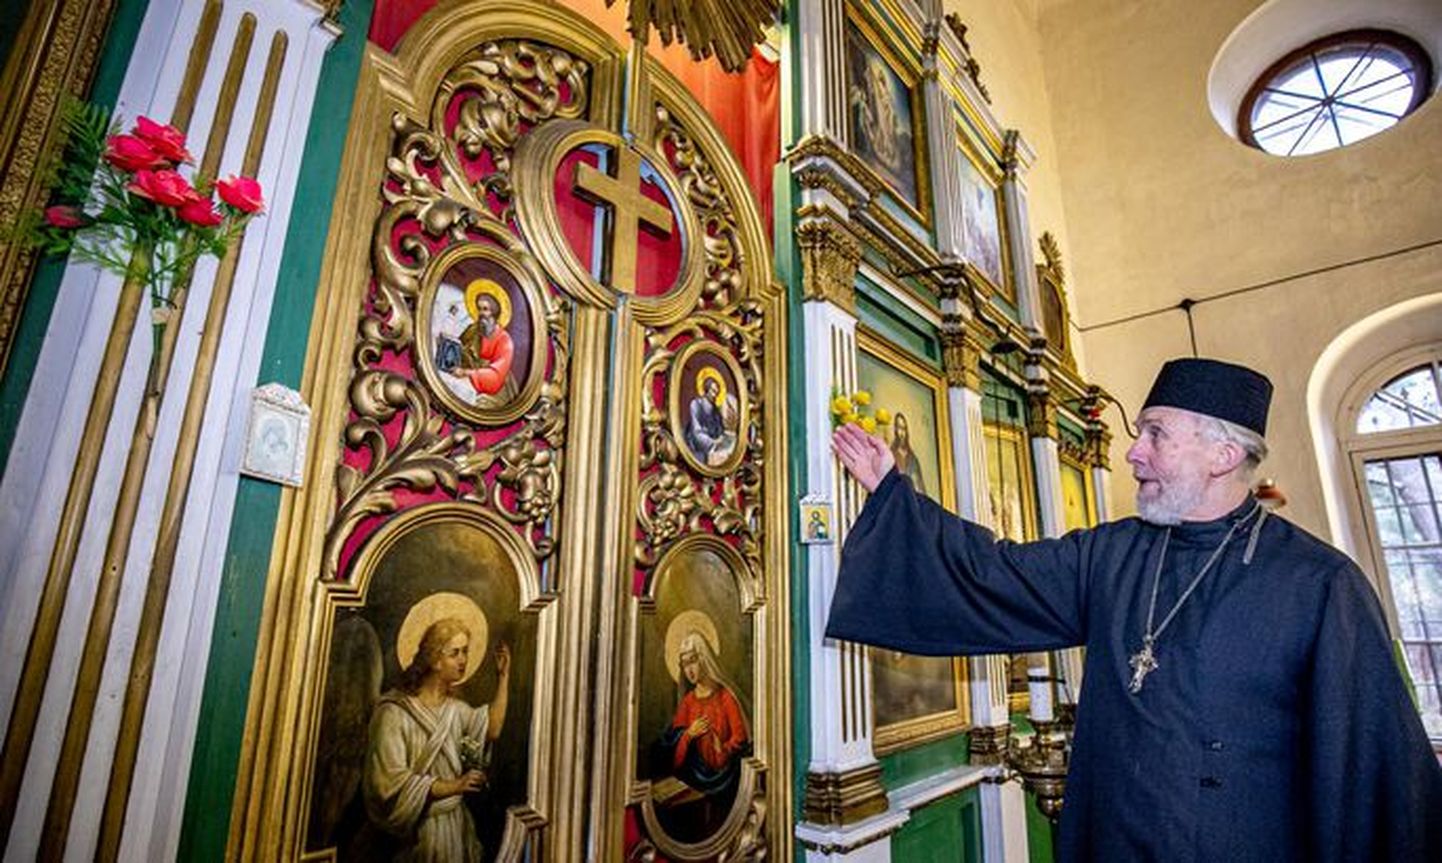 Настоятель Церкви Преображения в Хяэдемеэсте Ардалион Кесккюла показывает две иконы из иконостаса, которые были украдены 25 лет назад, но теперь возвращены храму.